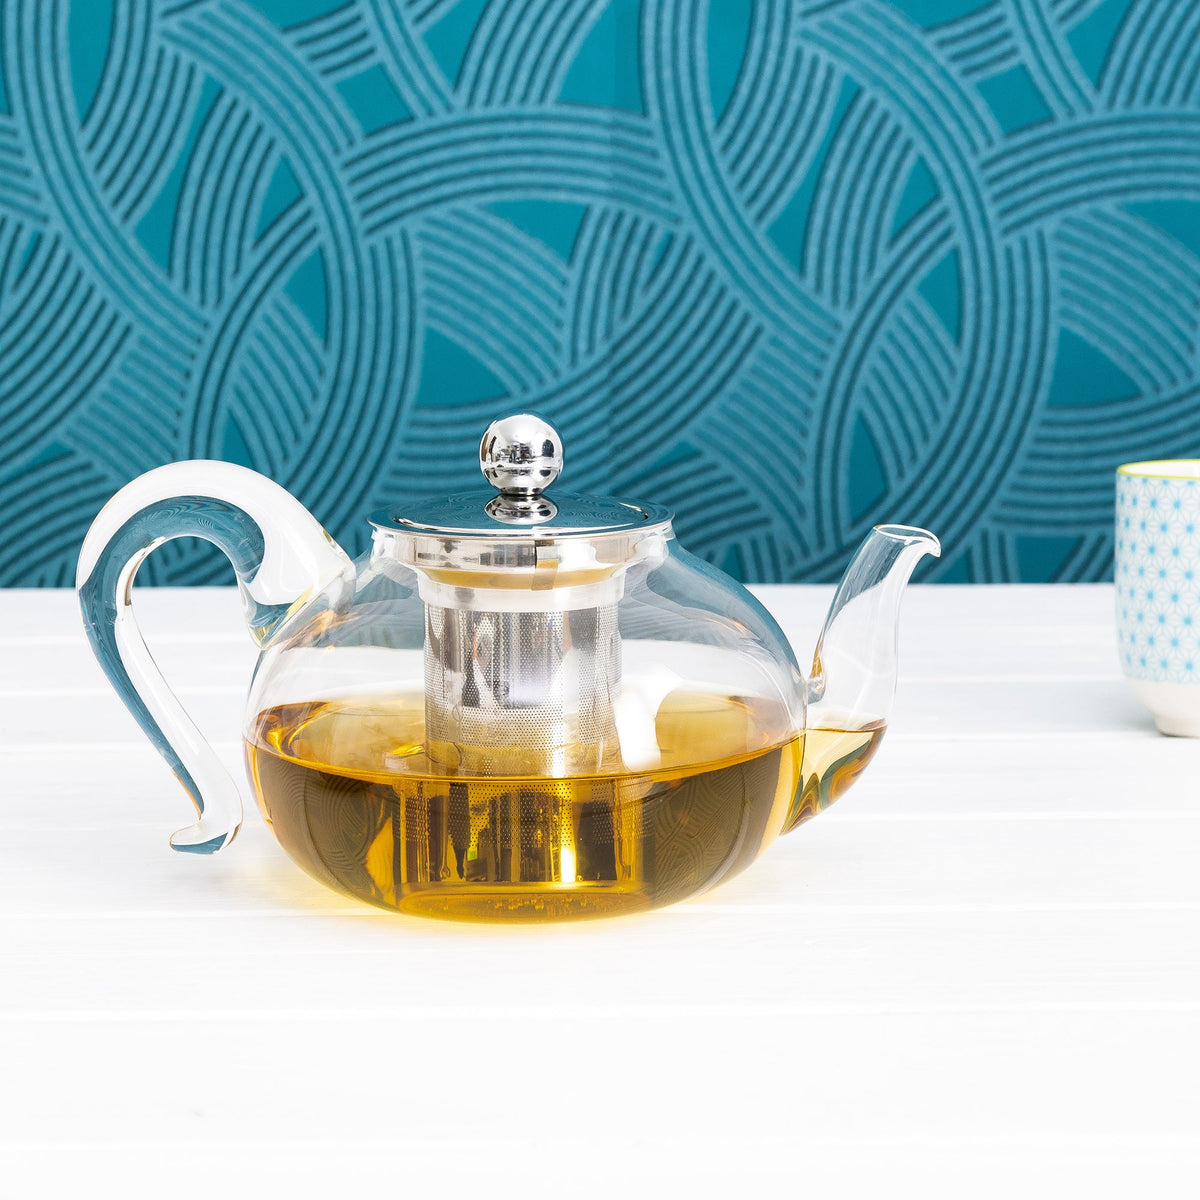 Sakura Glass Teapot - cristel france - Bluecashew Kitchen Homestead